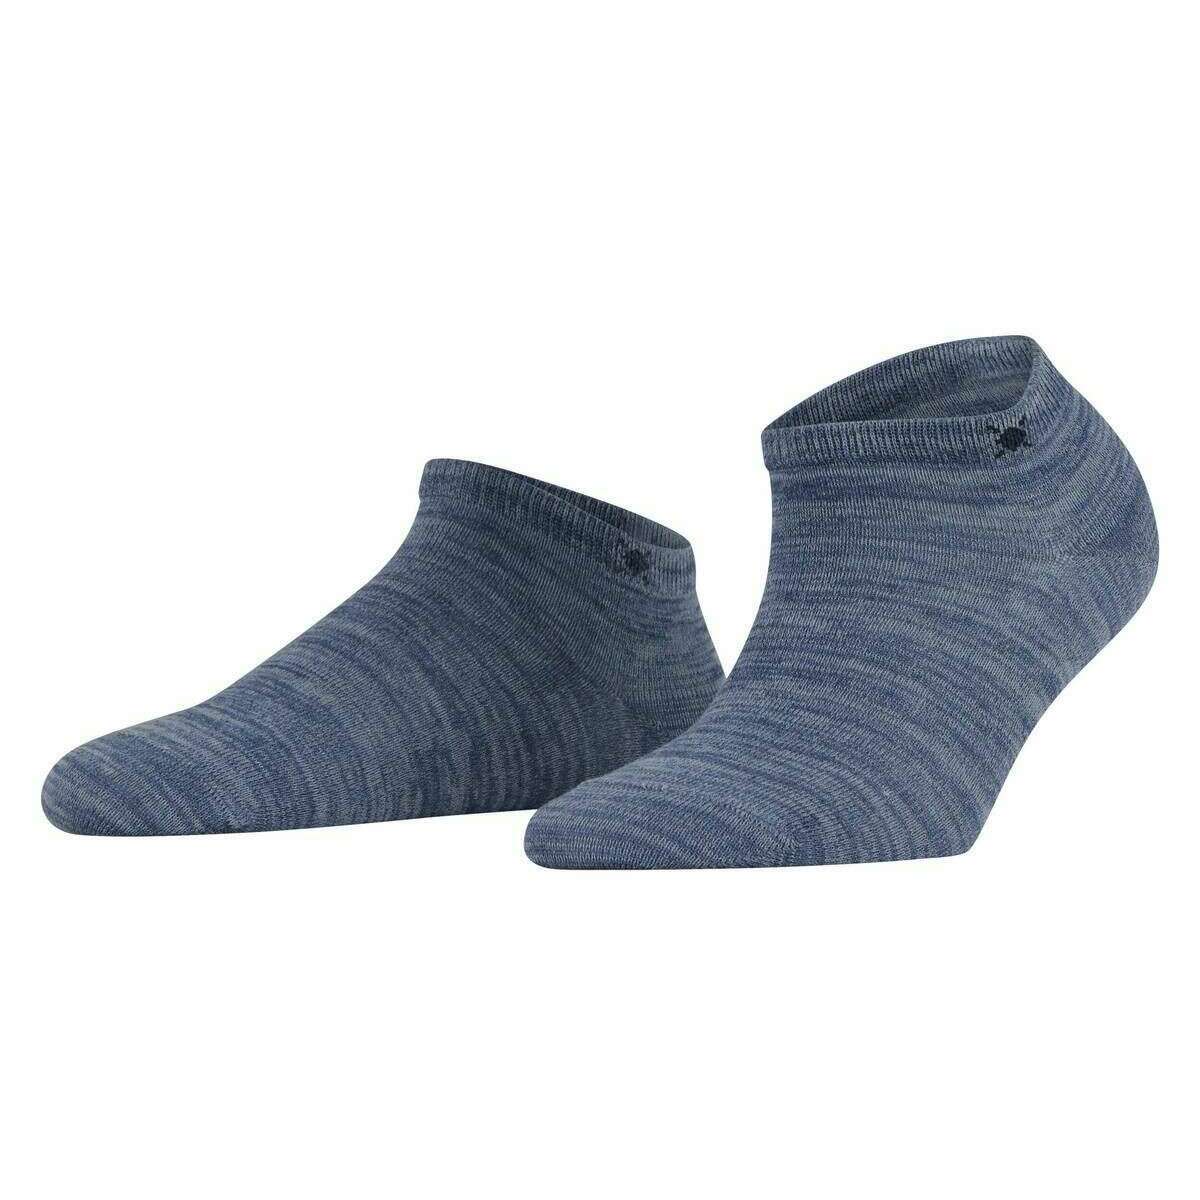 Burlington Soho Vibes Socks - Light Jeans Blue